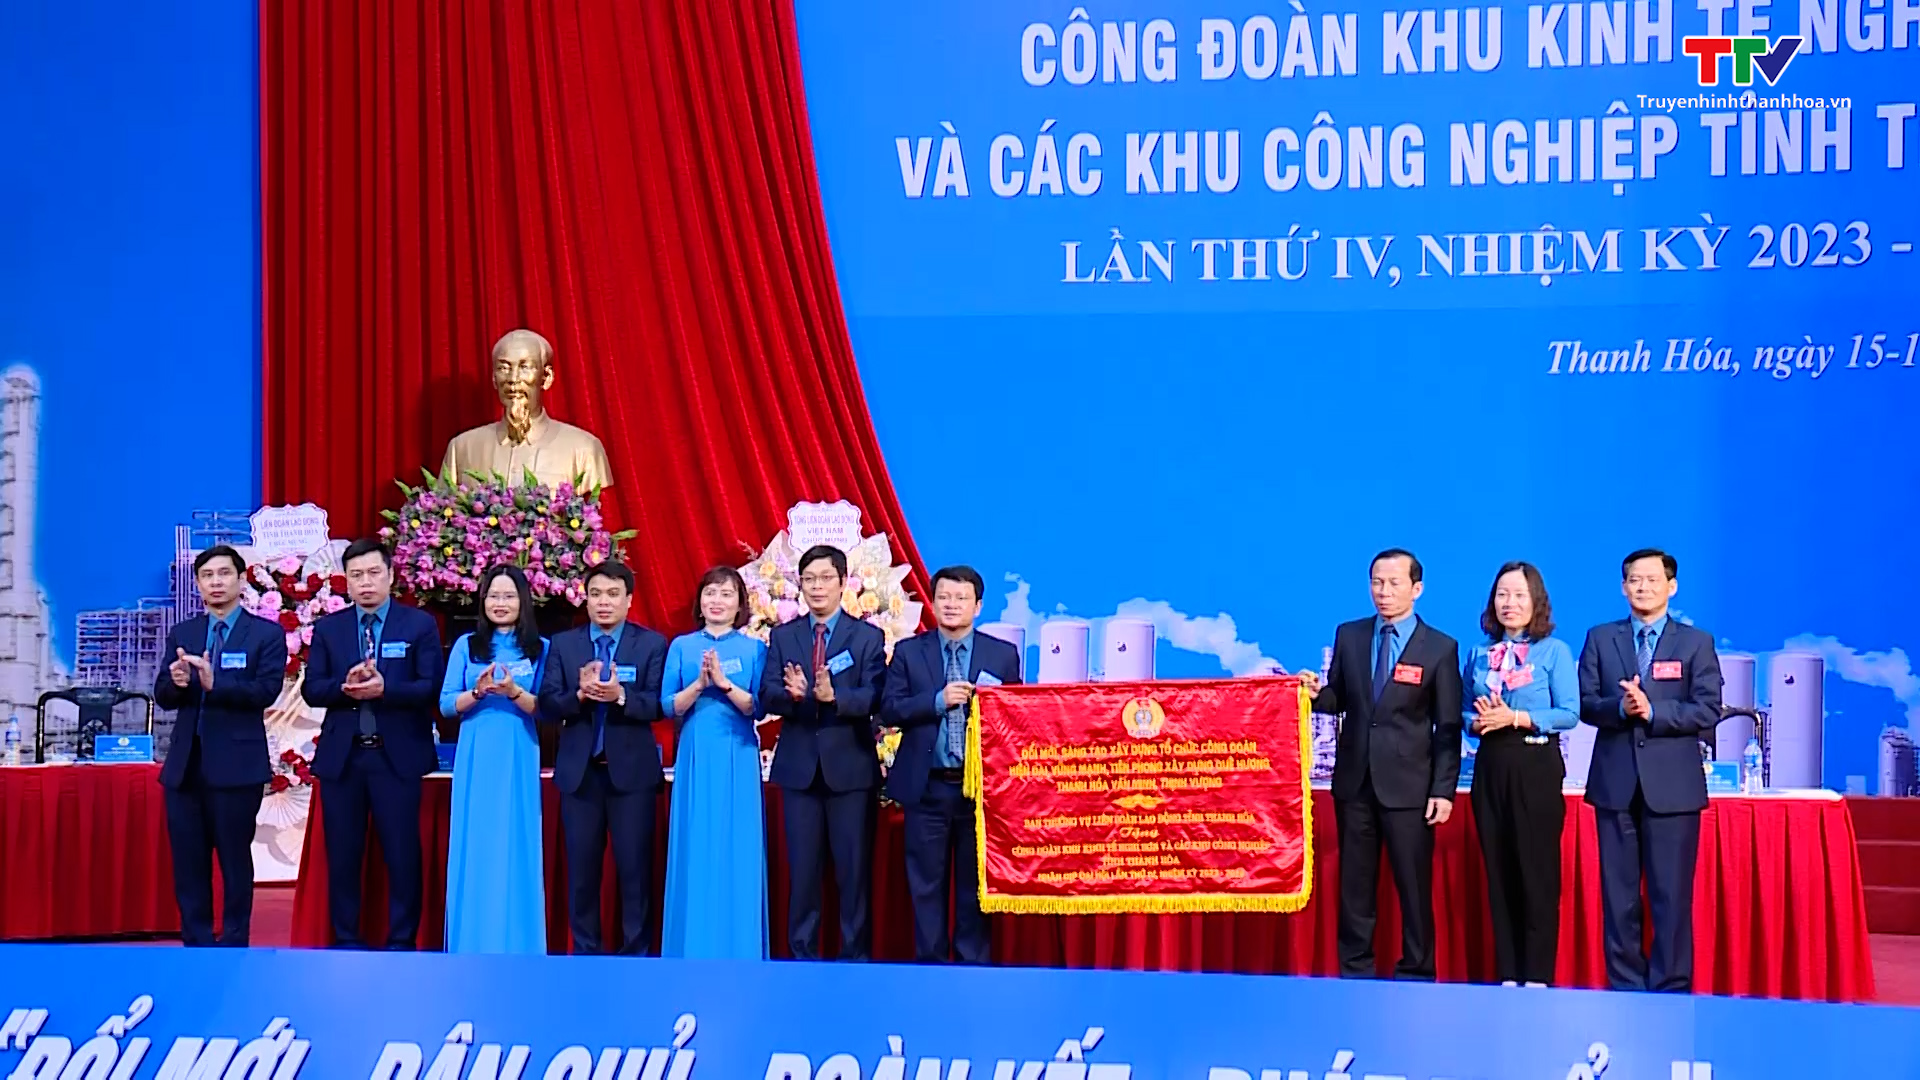 Đại hội Công đoàn Khu kinh tế Nghi Sơn và các Khu công nghiệp tỉnh Thanh Hóa lần thứ IV, nhiệm kỳ 2023-2028 - Ảnh 3.